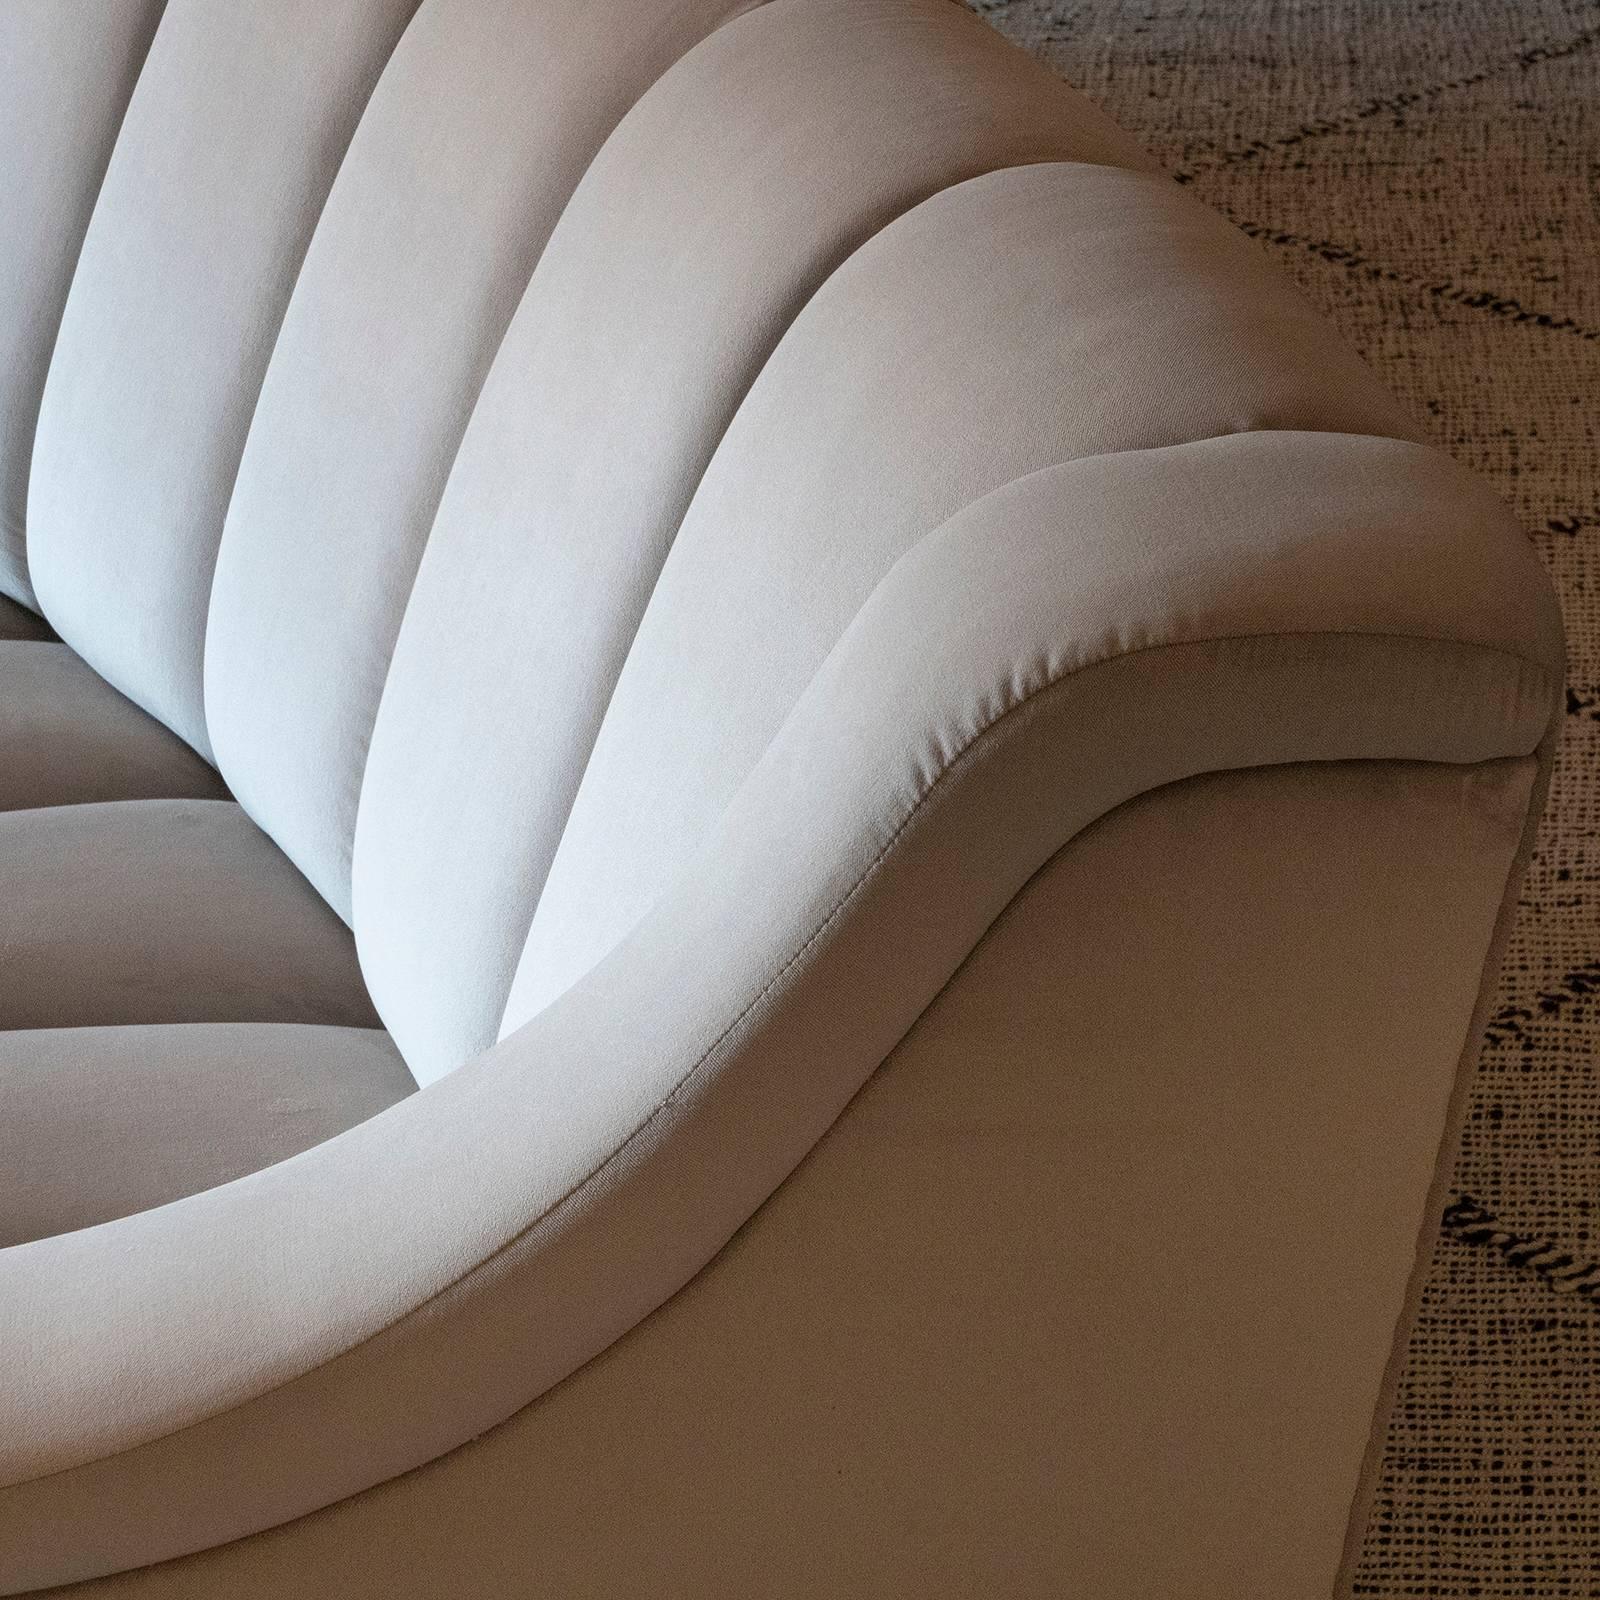 curved contemporary sofa